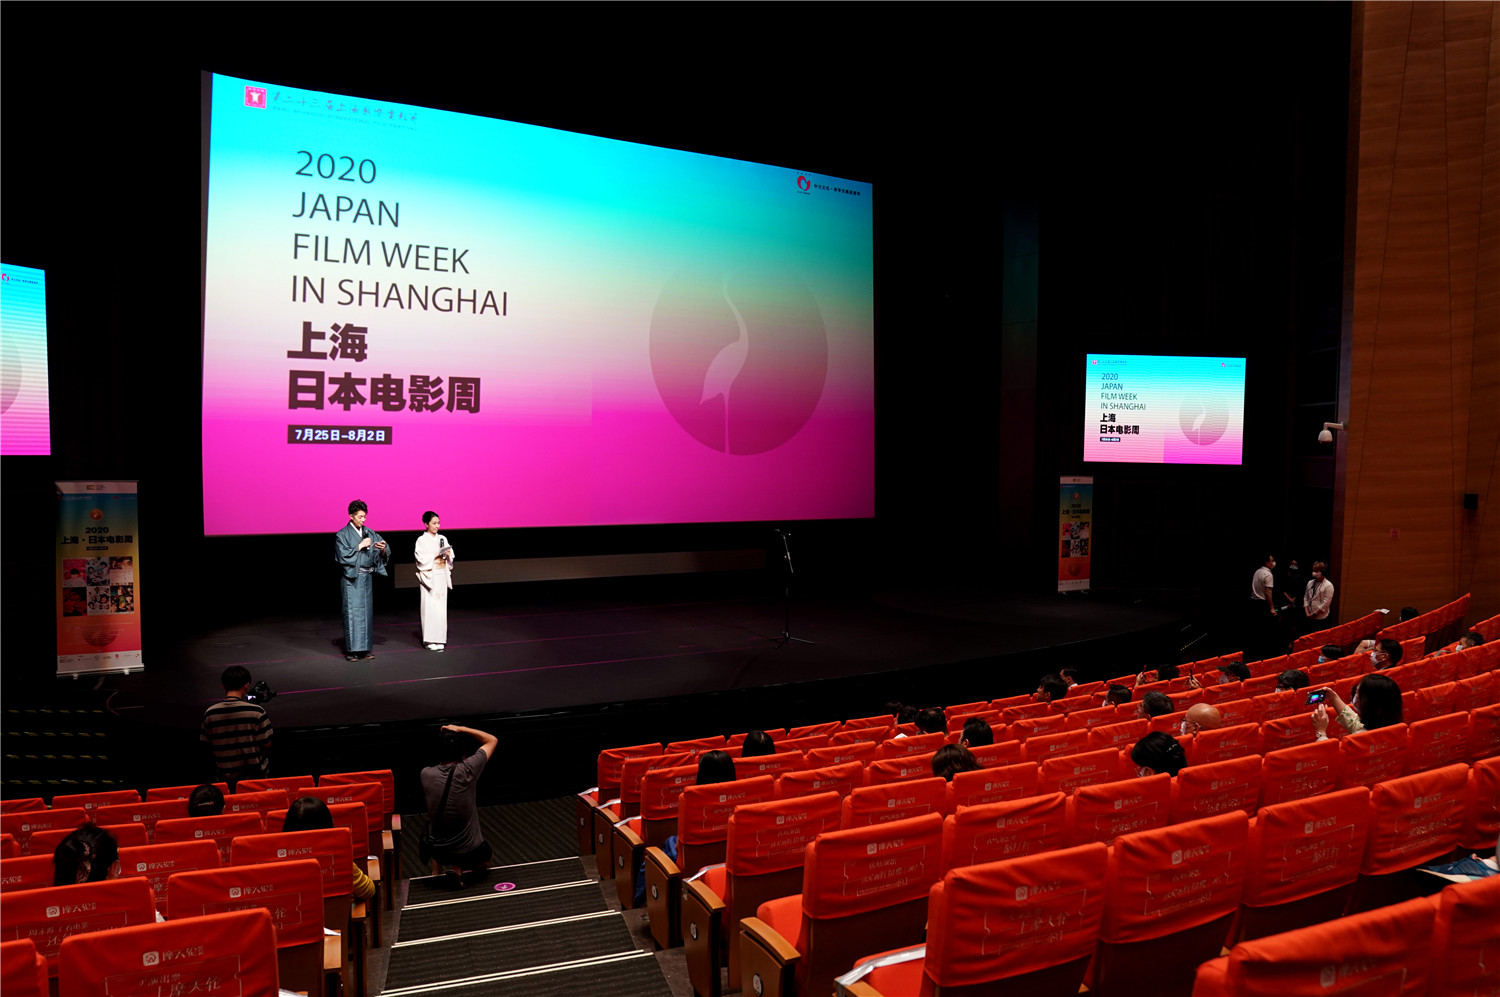 上海国际电影节日本电影周助推中日文化交流新华社 2020